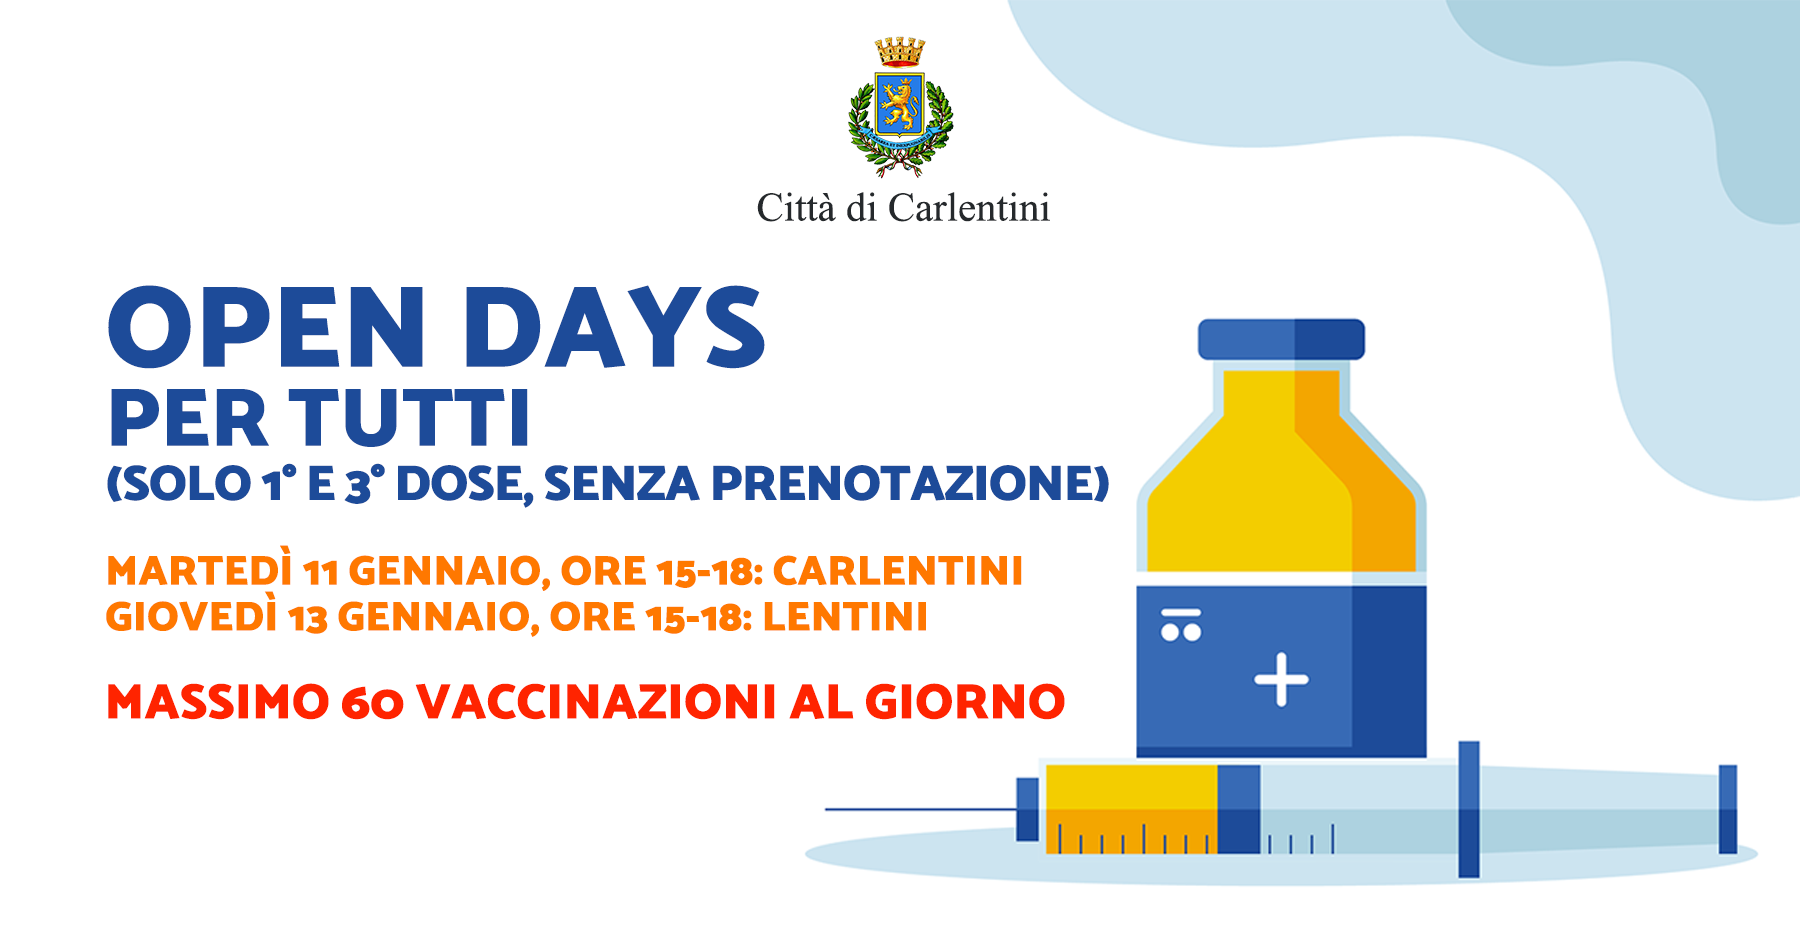 Campagna vaccinale: Open Days 1° e 3° dose, martedì 11 e giovedì 13, ore 15-18